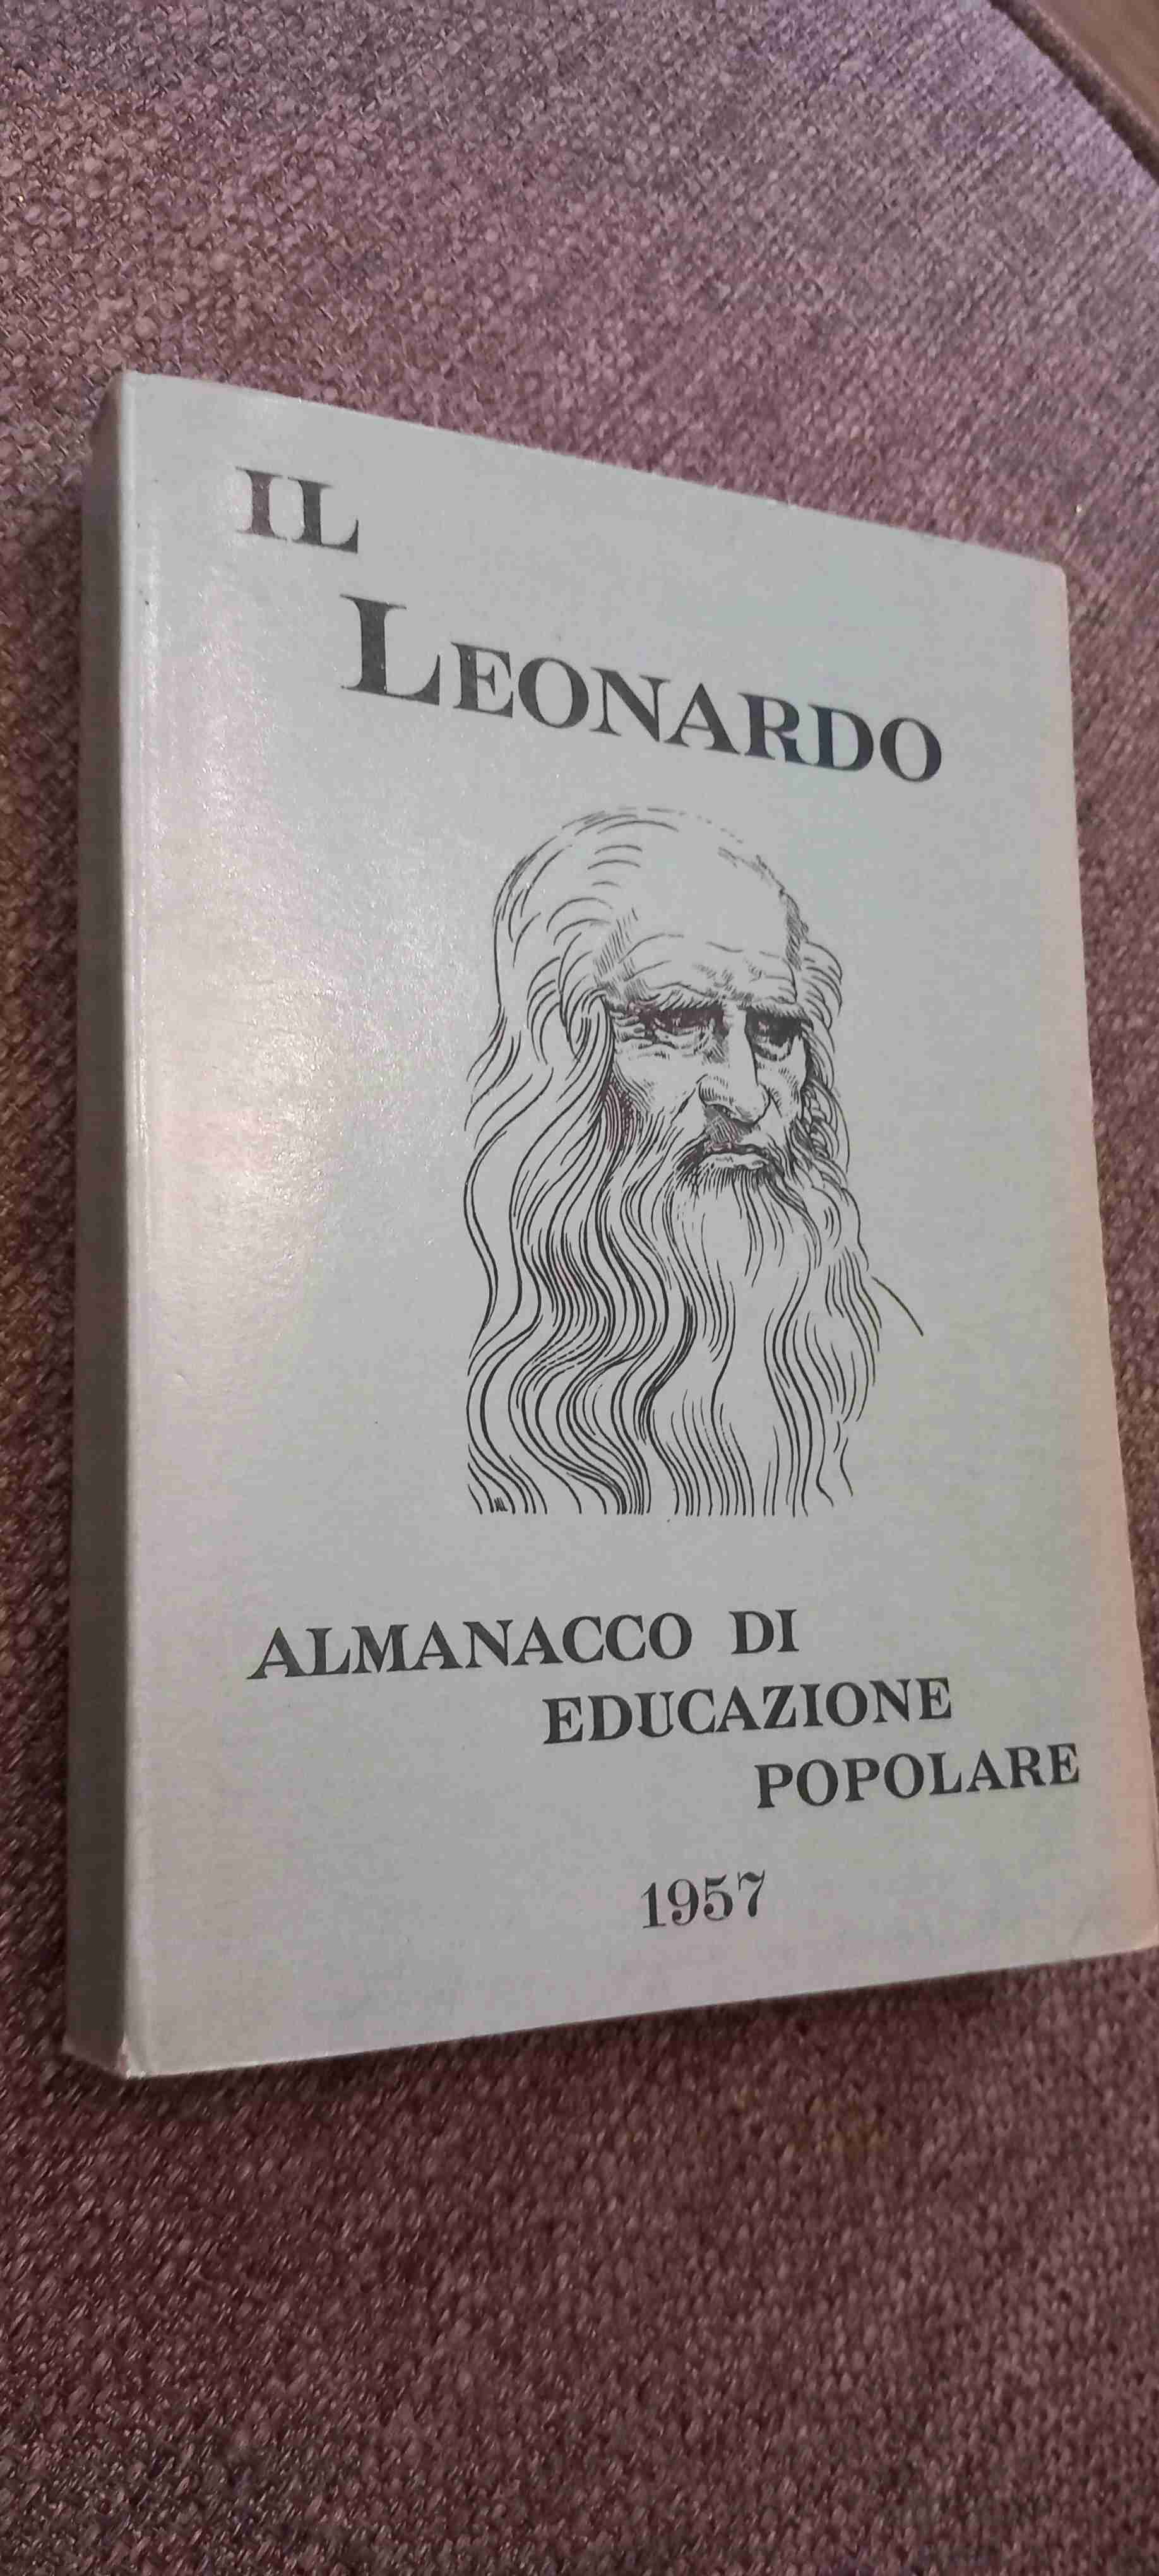 Il Leonardo - Almanacco di educazione popolare 